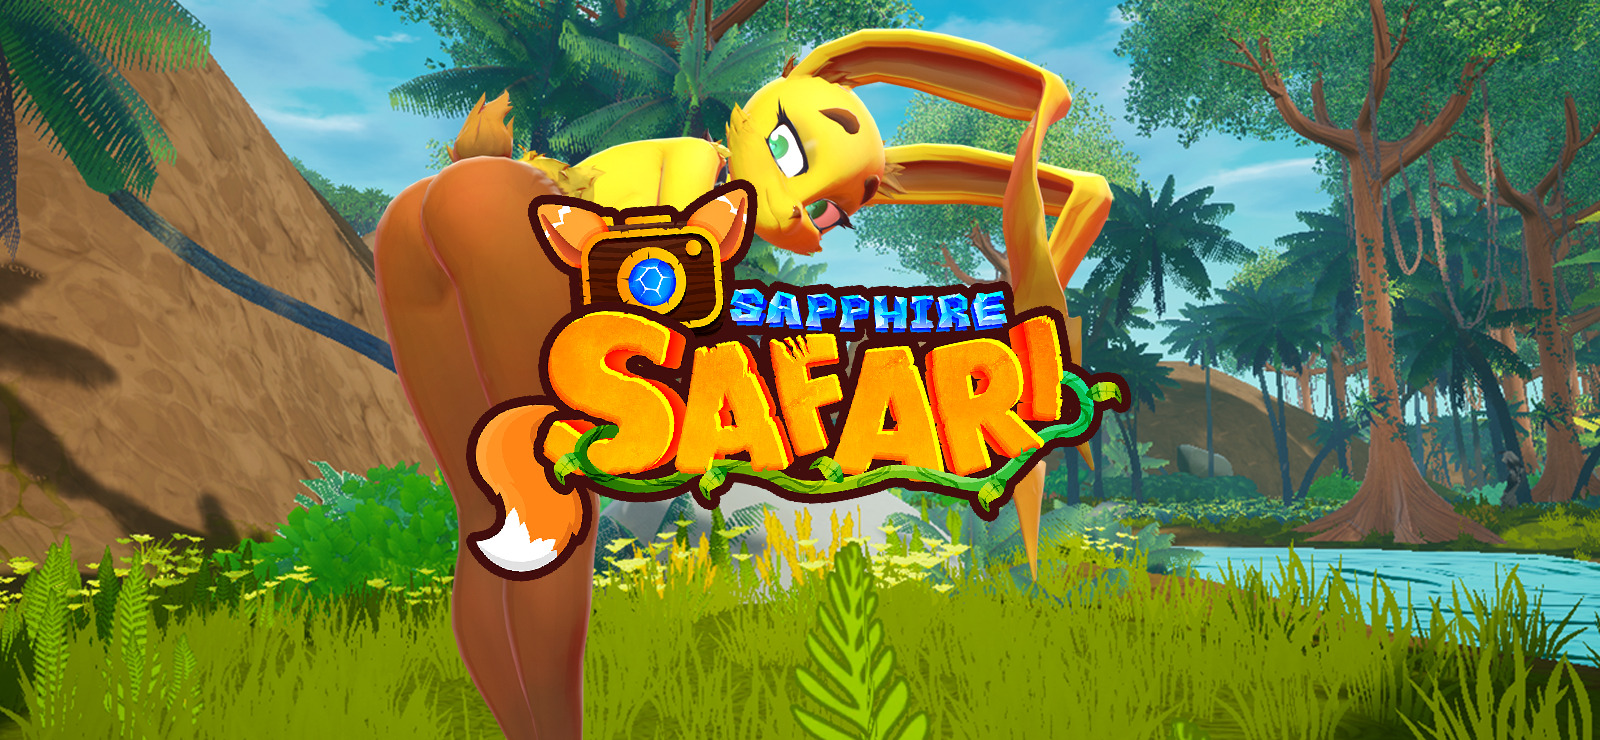 Sapphire safari download